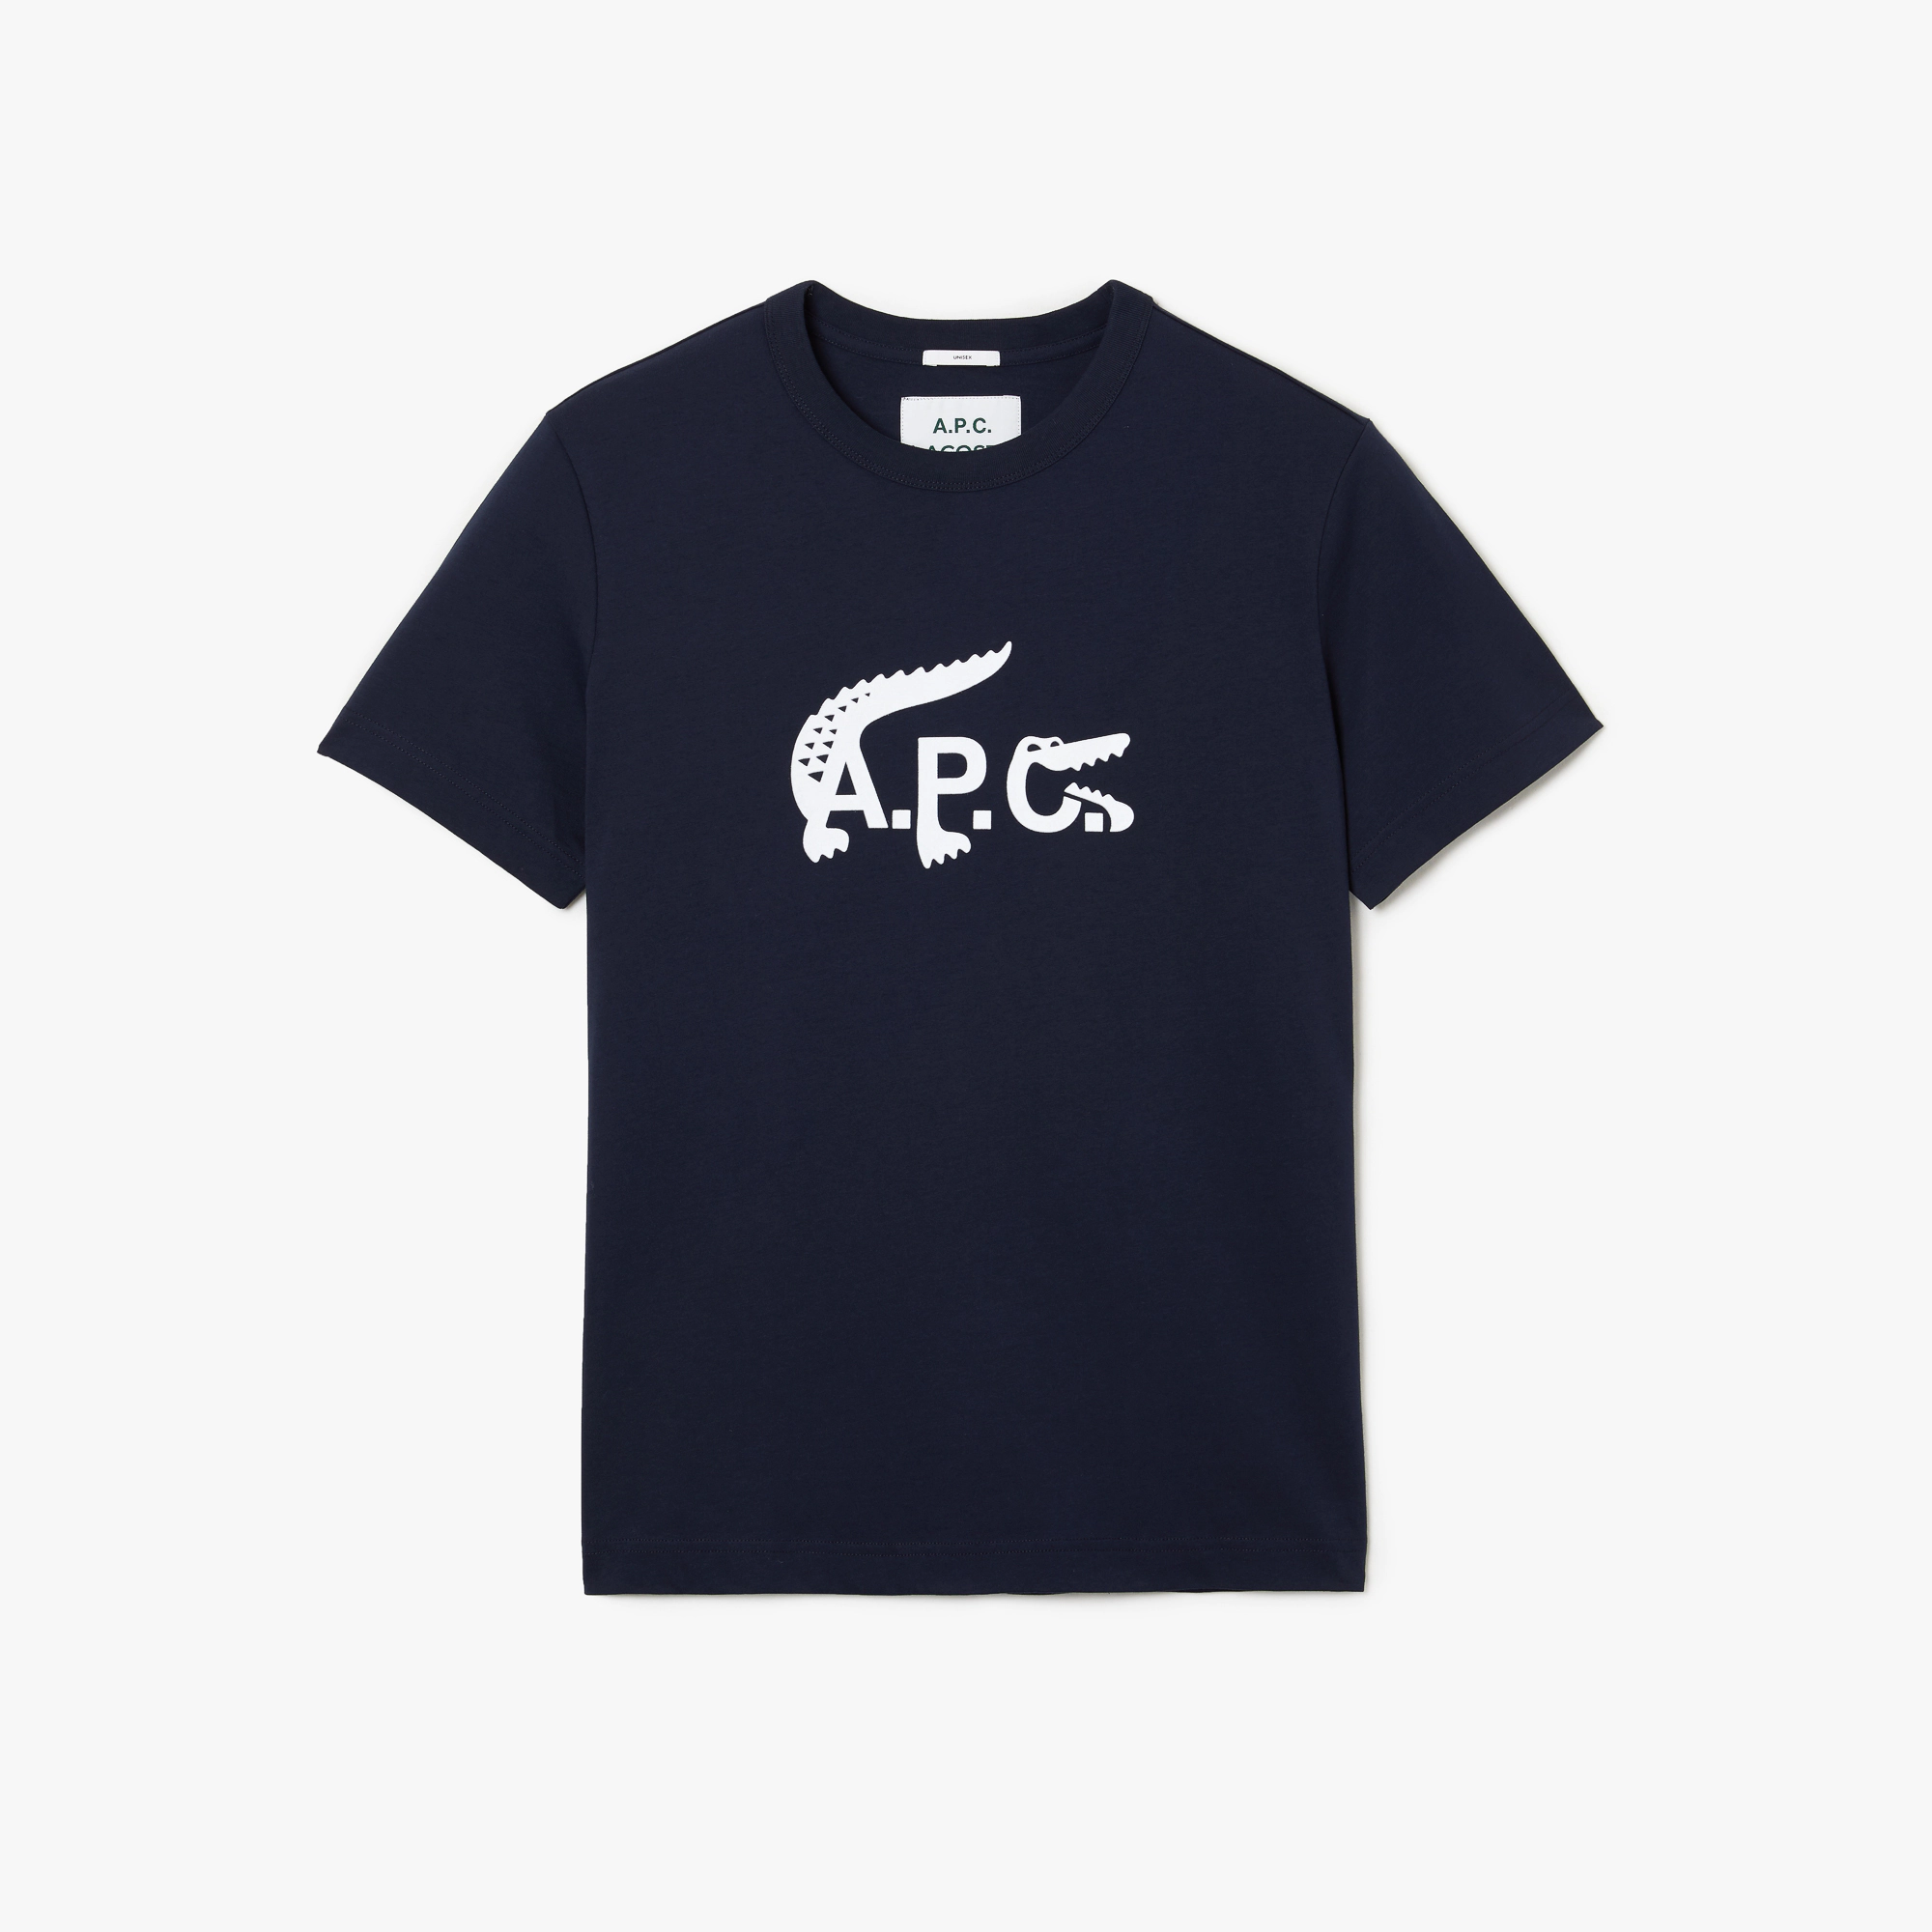 T-shirt Lacoste A.P.C